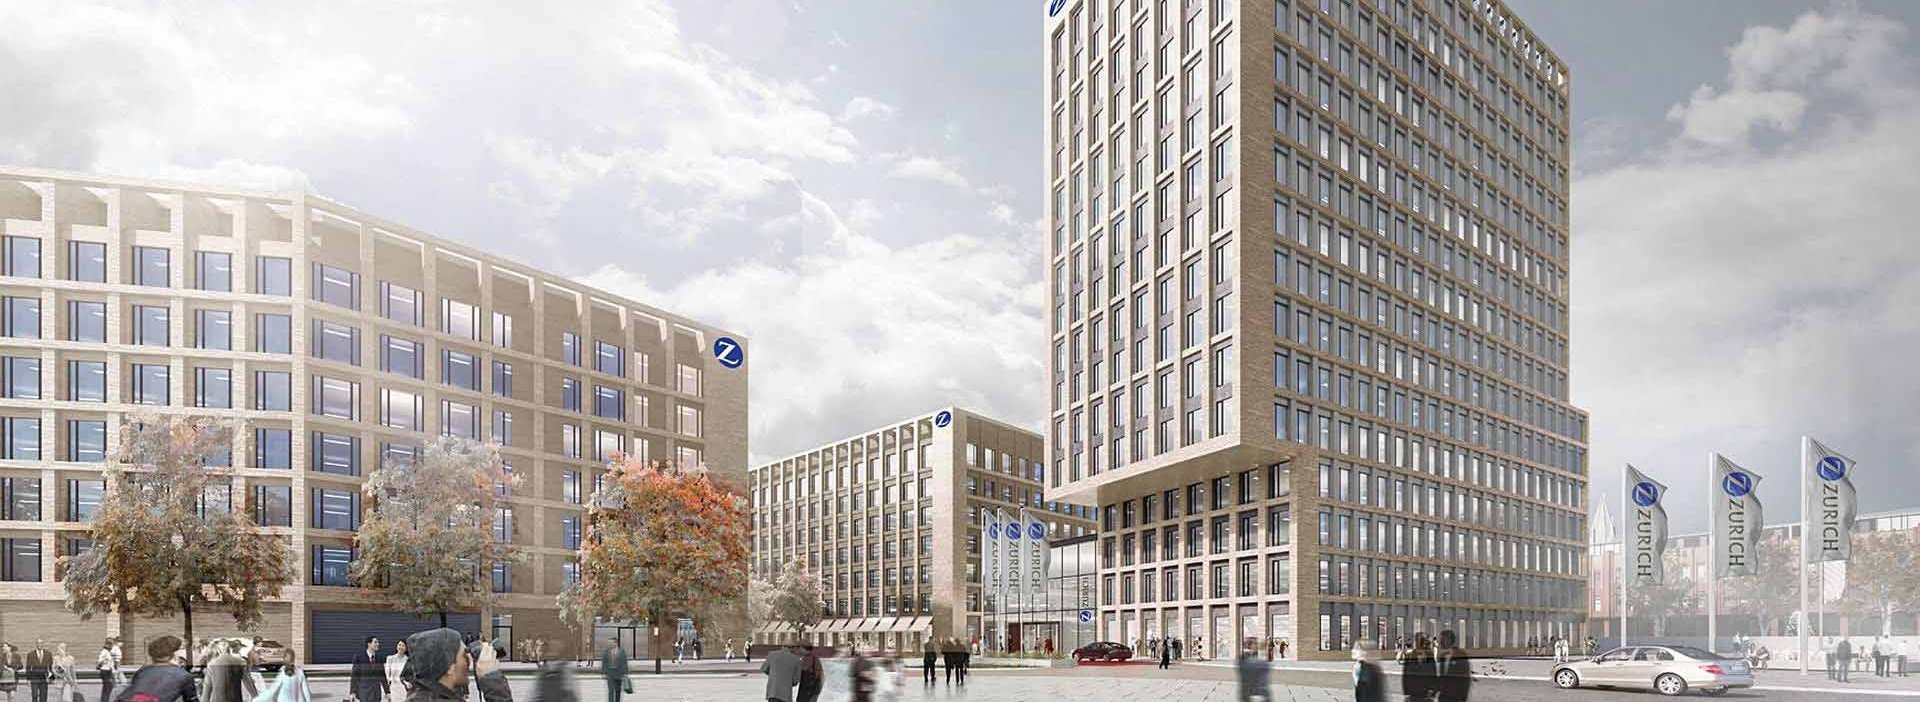 Visualisierung der MesseCity Köln, Gebäude Zurich Versicherung